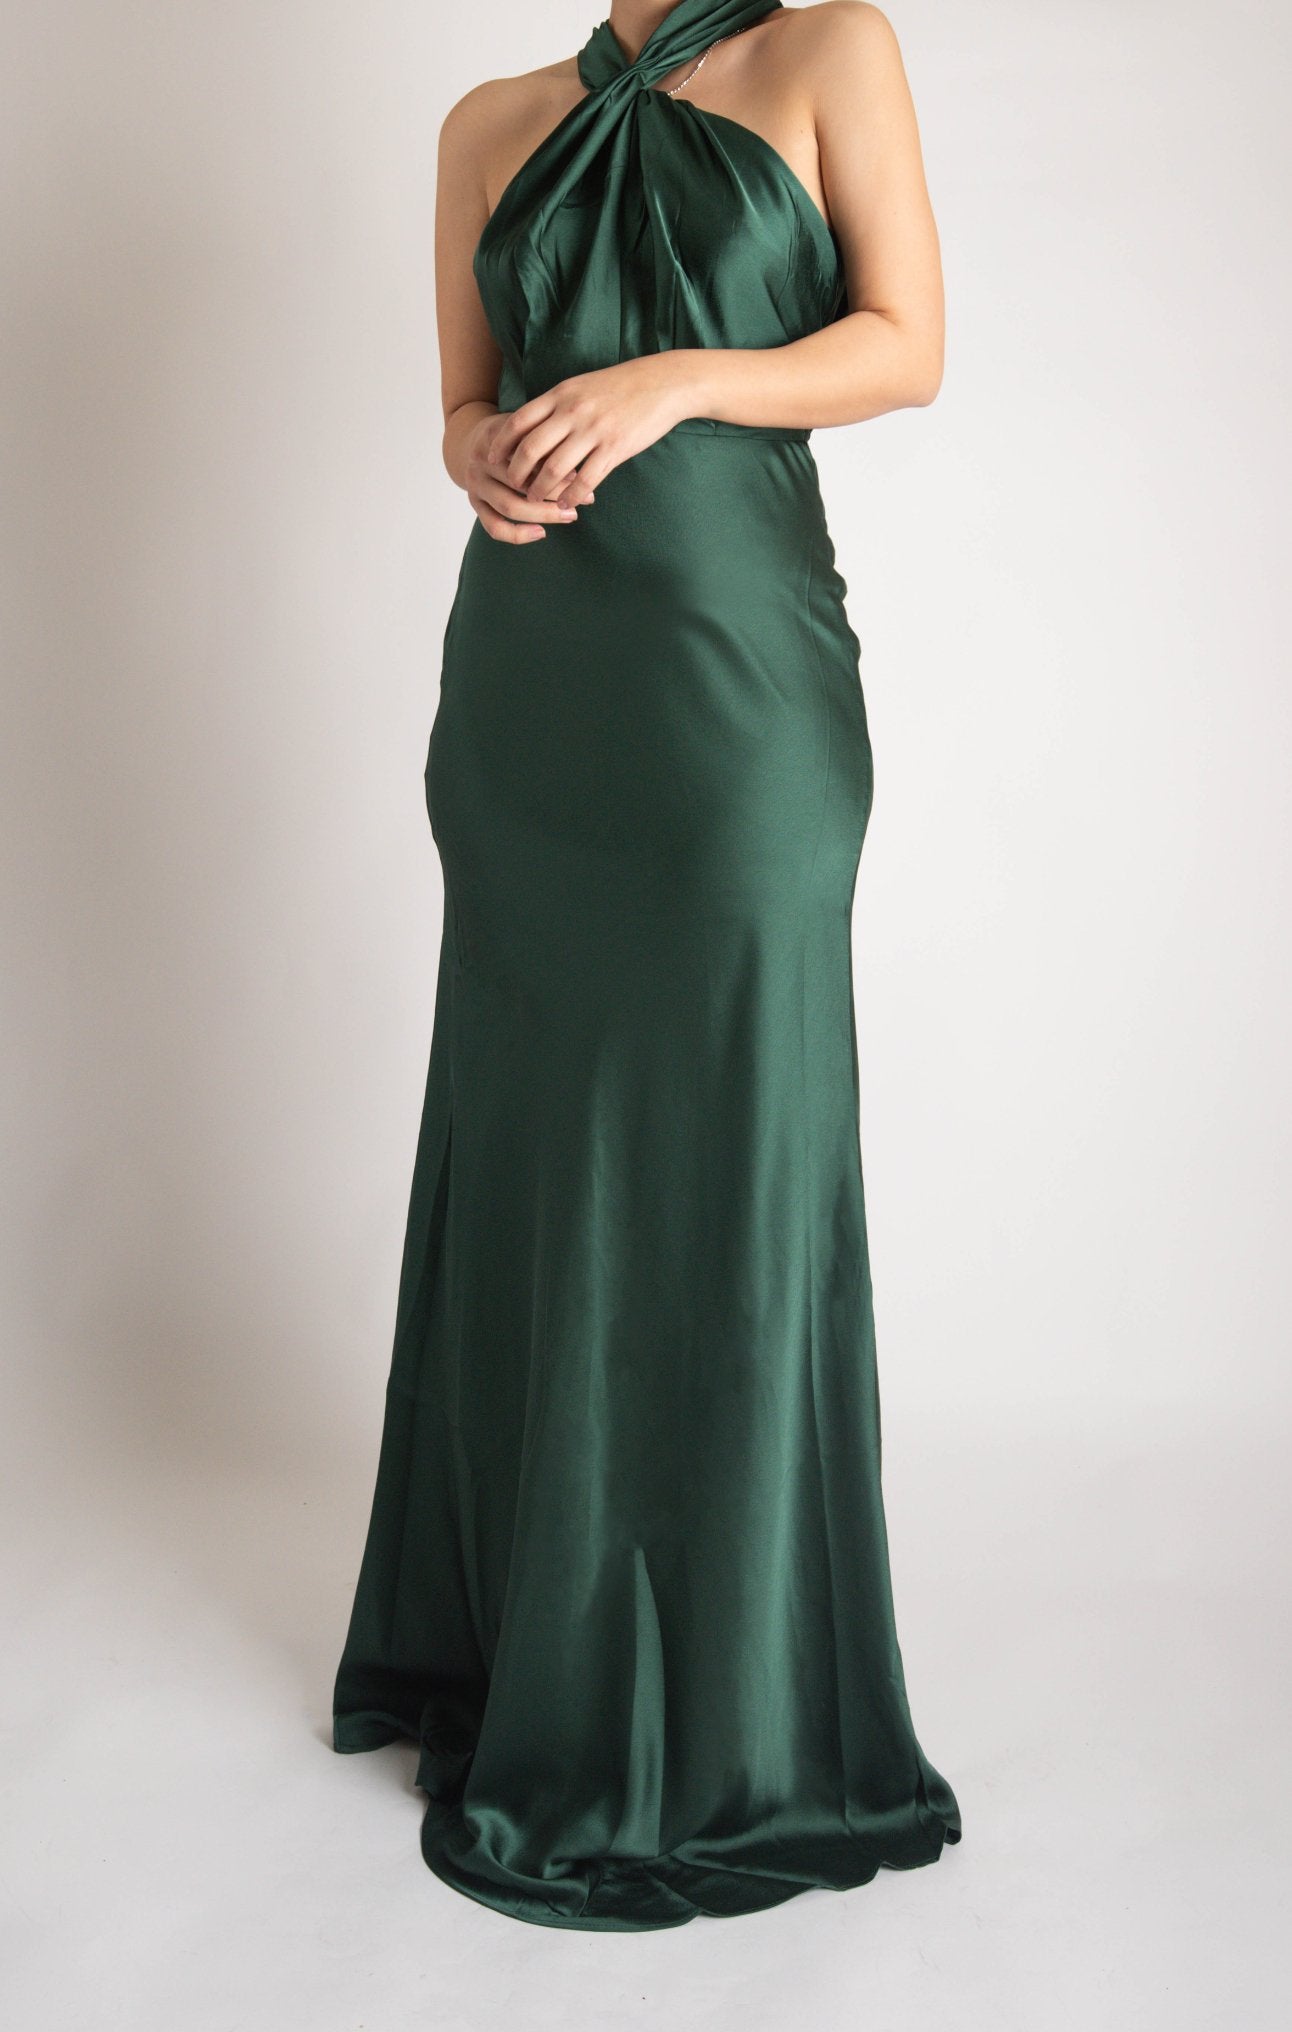 Erin - verde esmeralda - Cindel vestidos maxi, midi, mini, para toda ocasion, largos, de fiesta, de boda